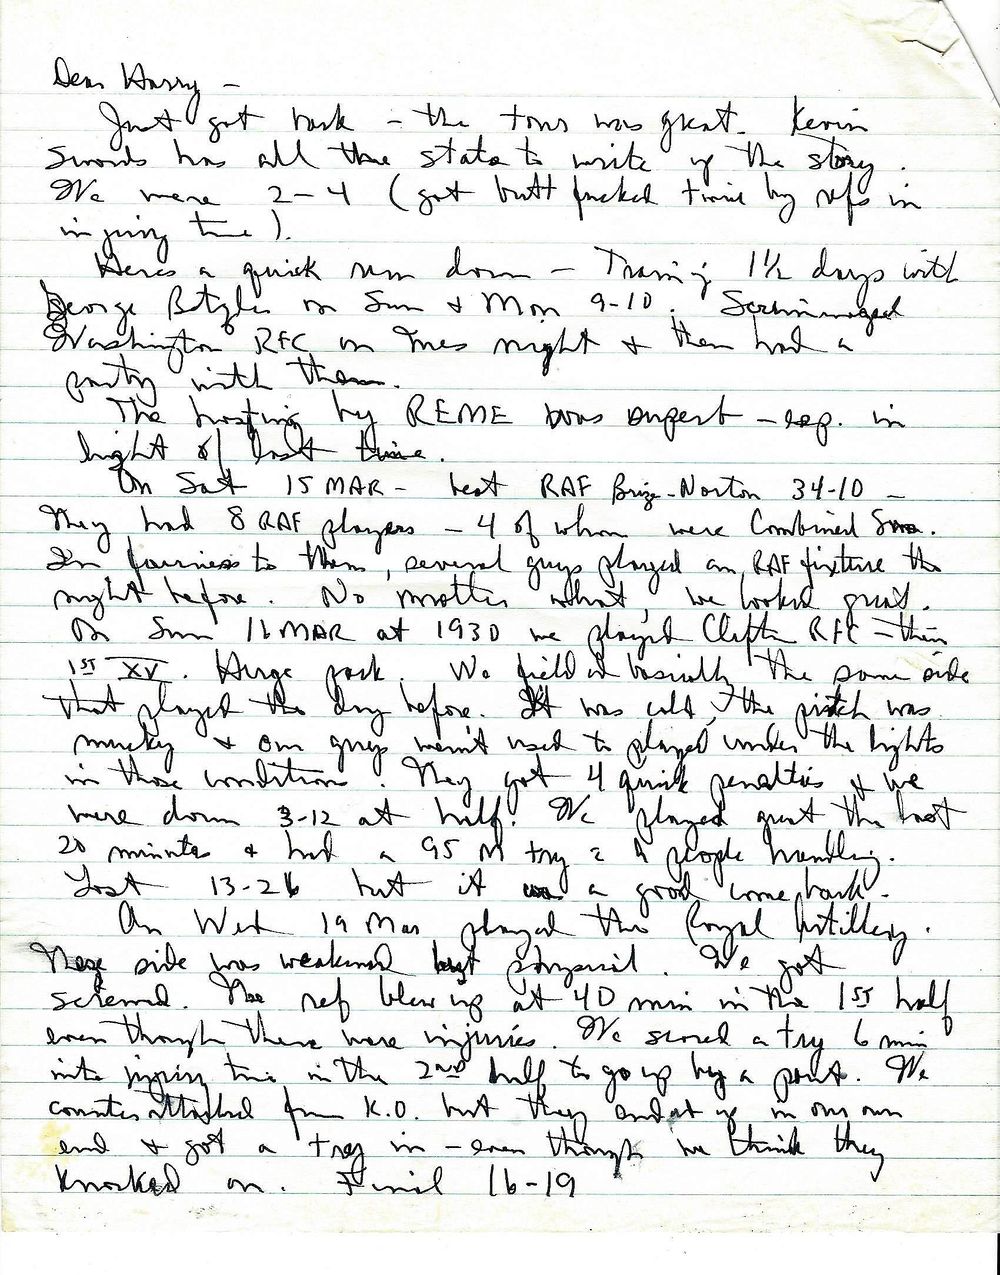 86 CS Battock tour letter 1.jpg